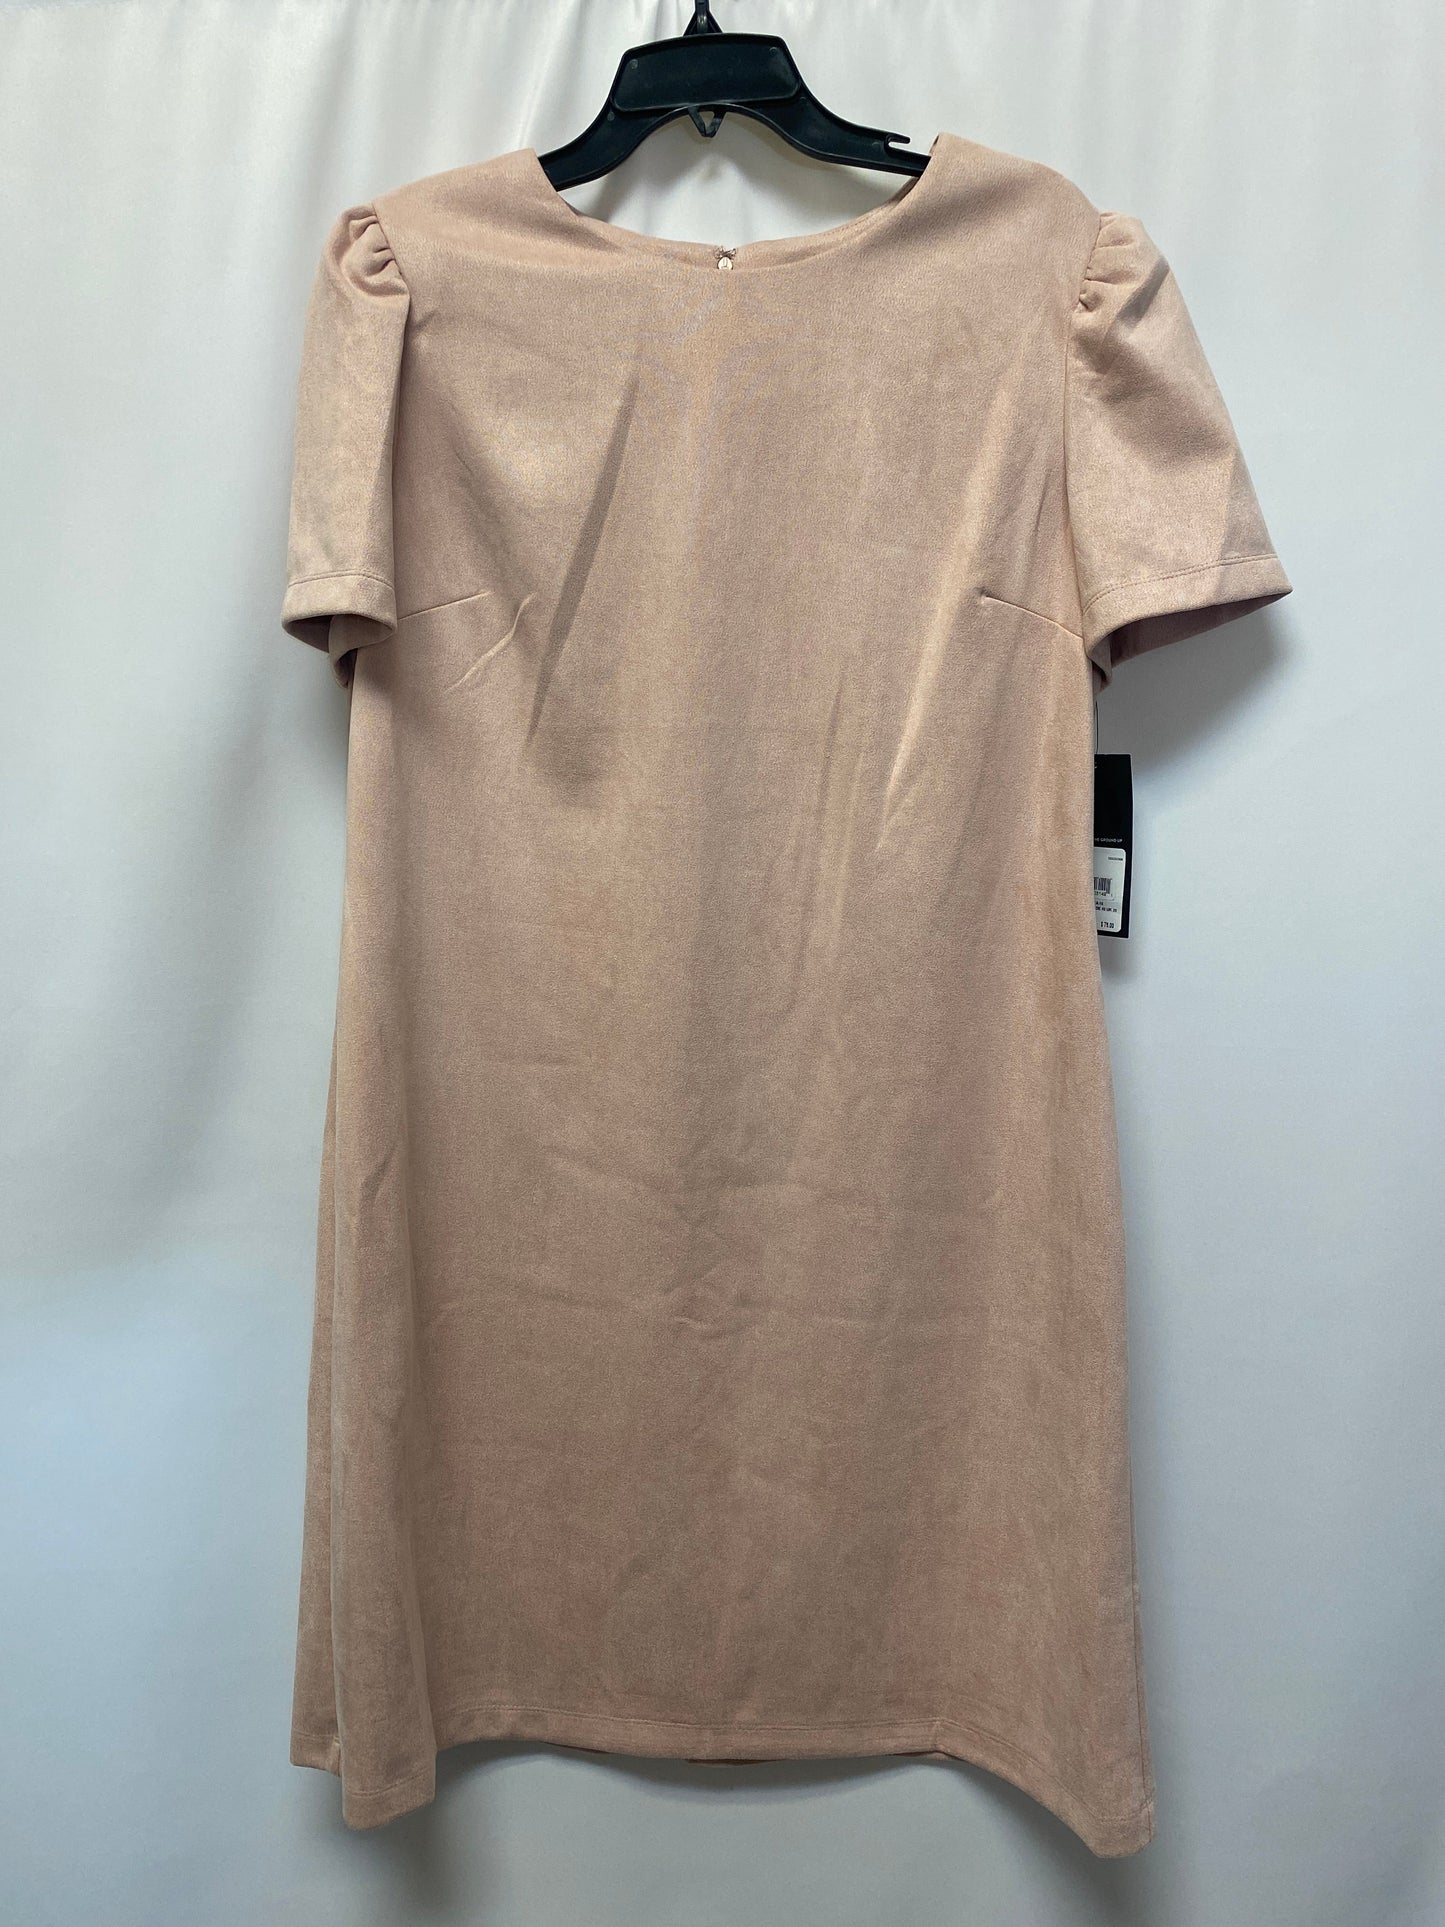 Dress Casual Midi By Nine West  Size: Xl